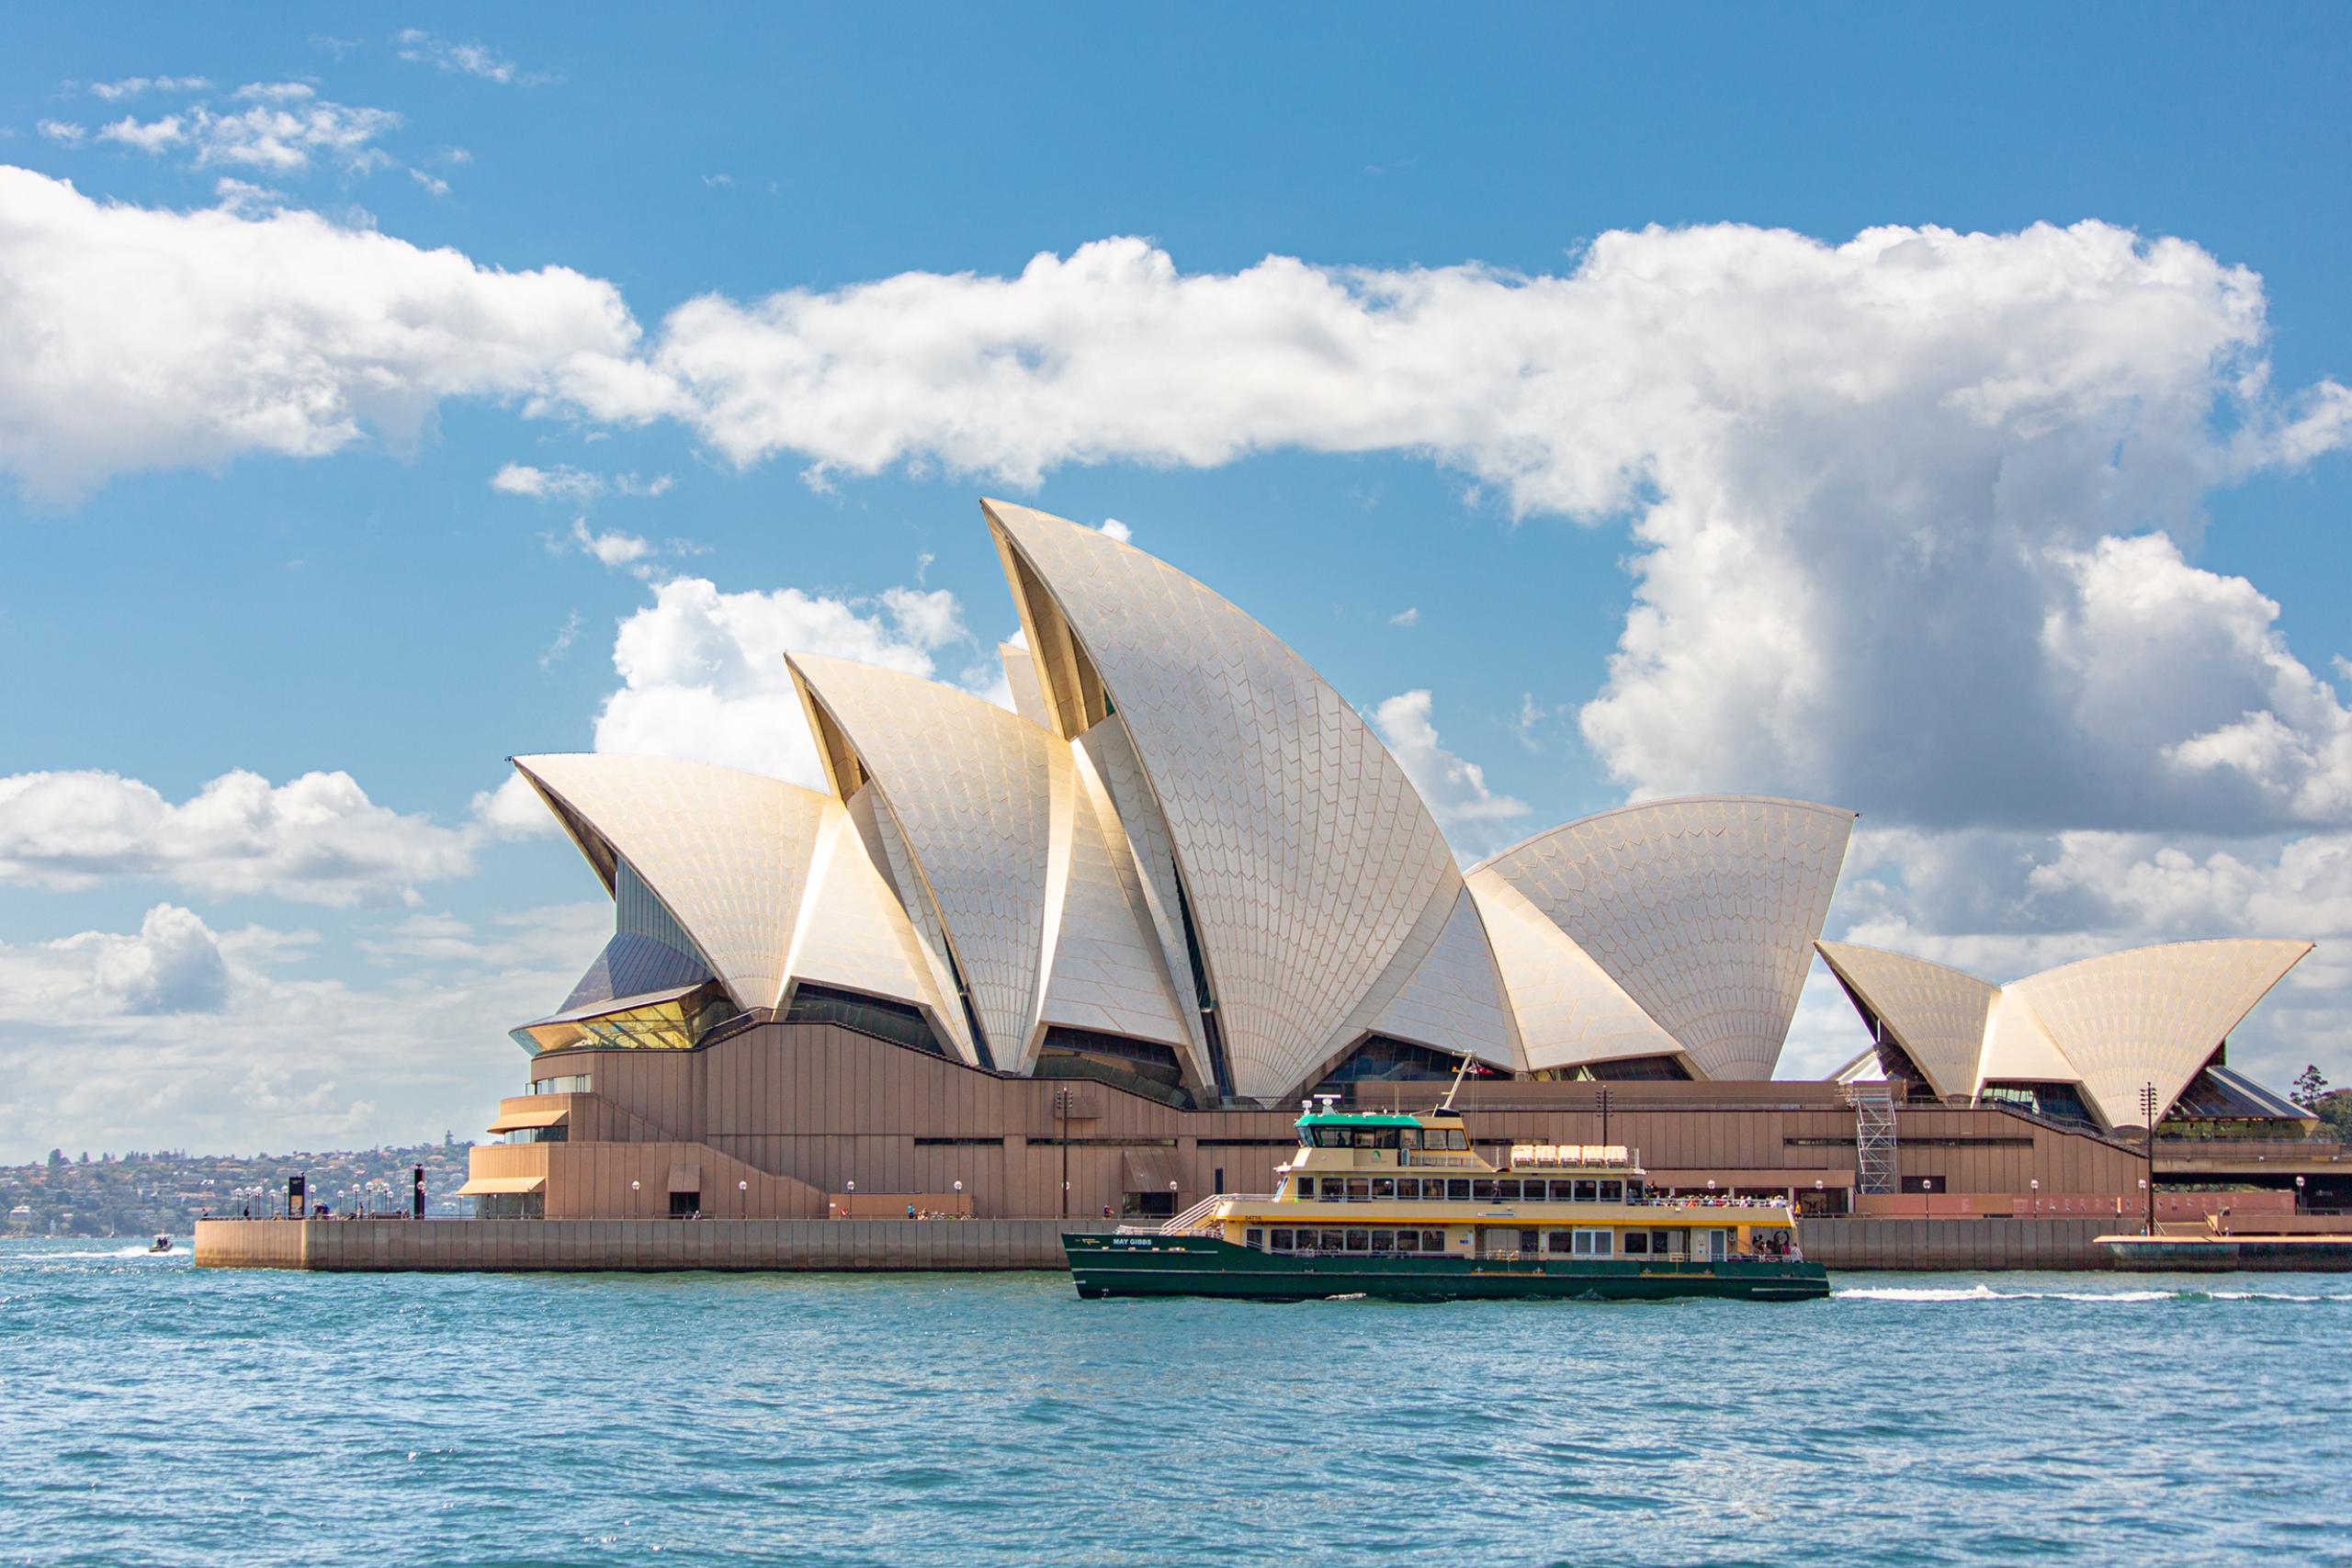 オーストラリア世界遺産「シドニー・オペラハウス」 を完全攻略